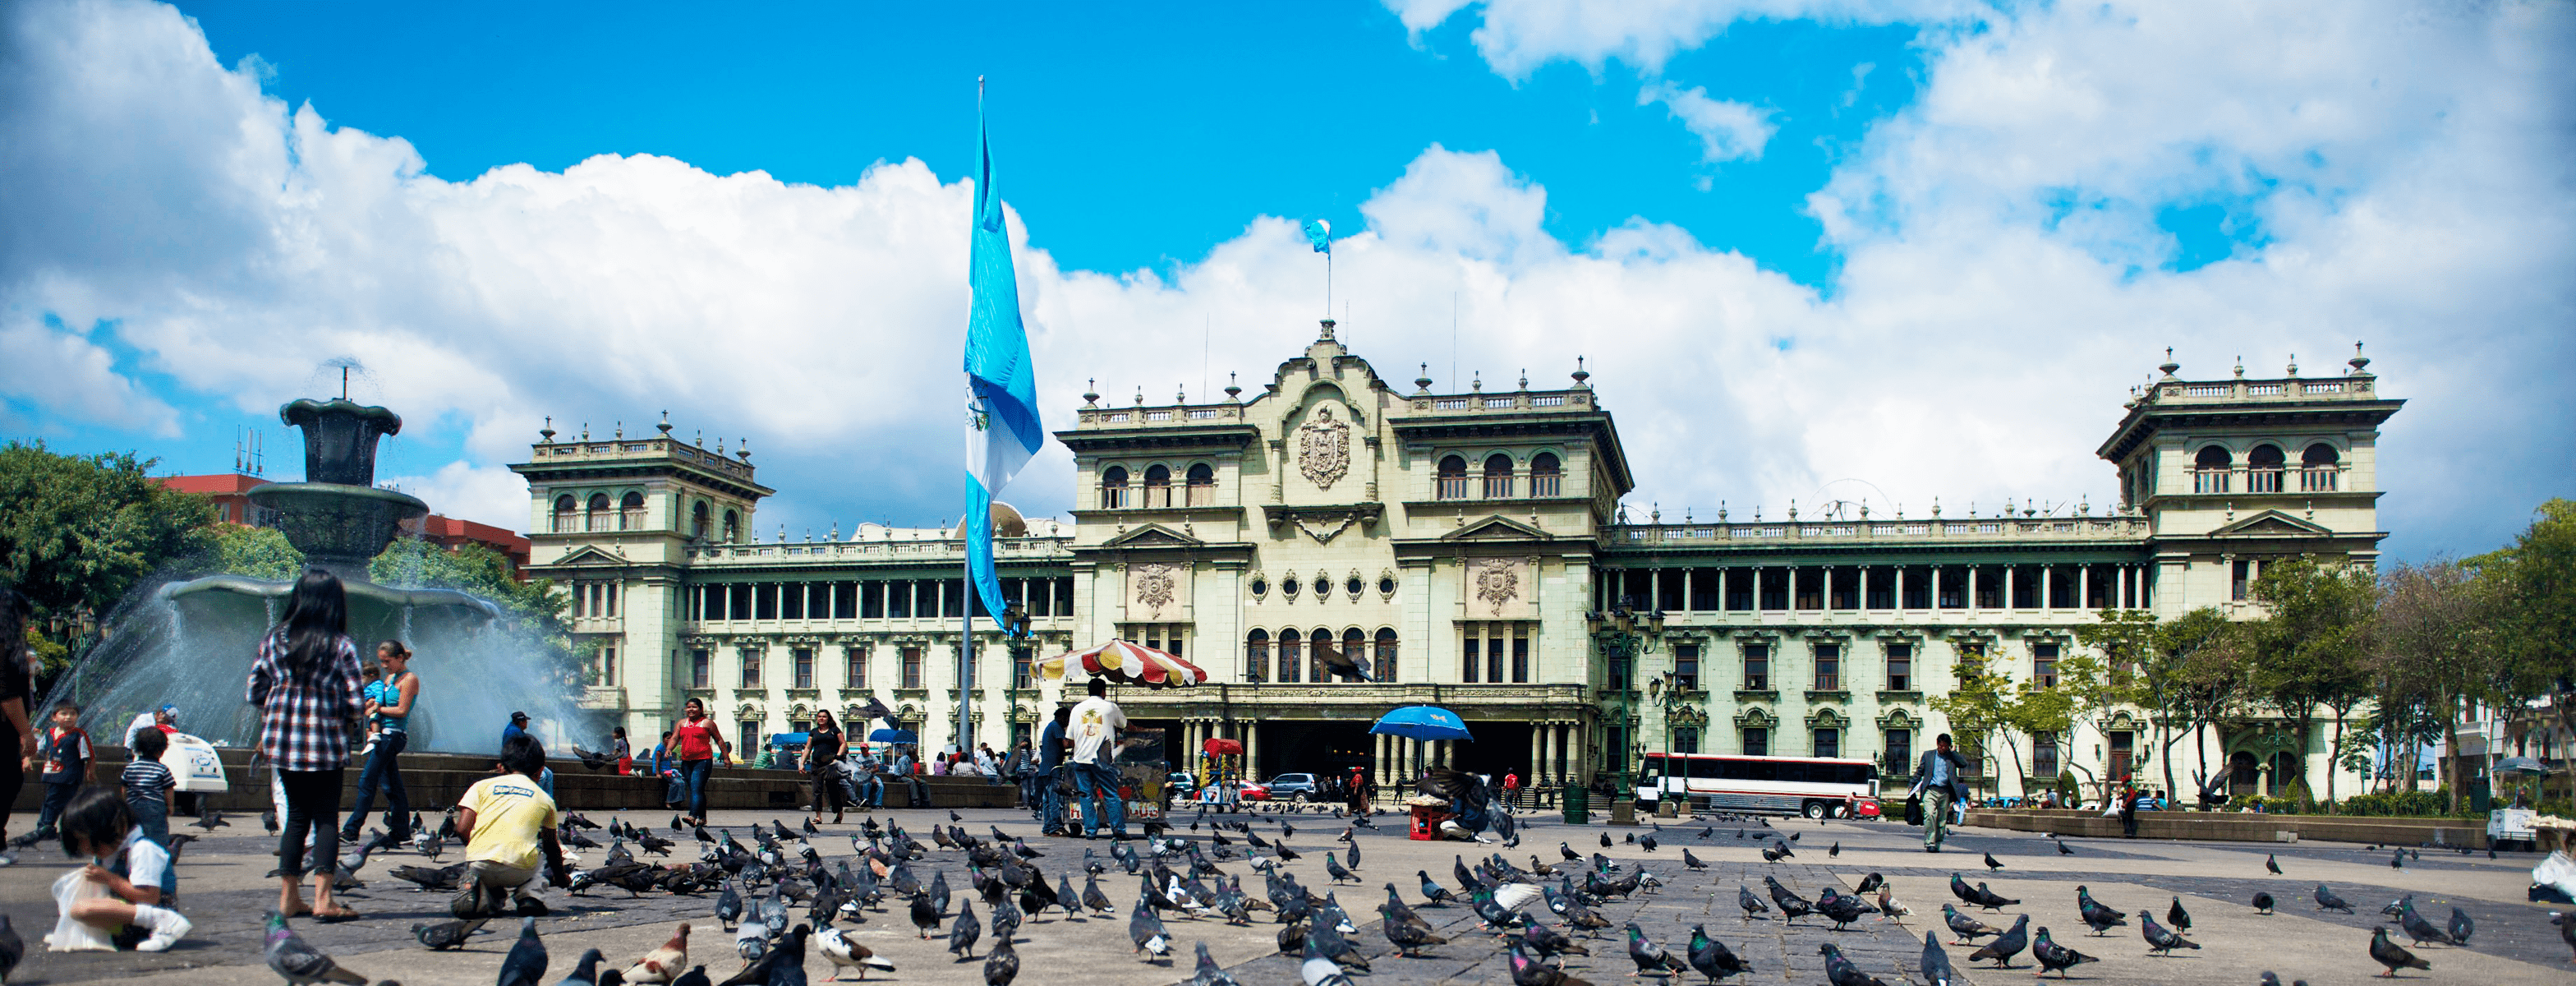 Guatemala city Adrenalina Tours